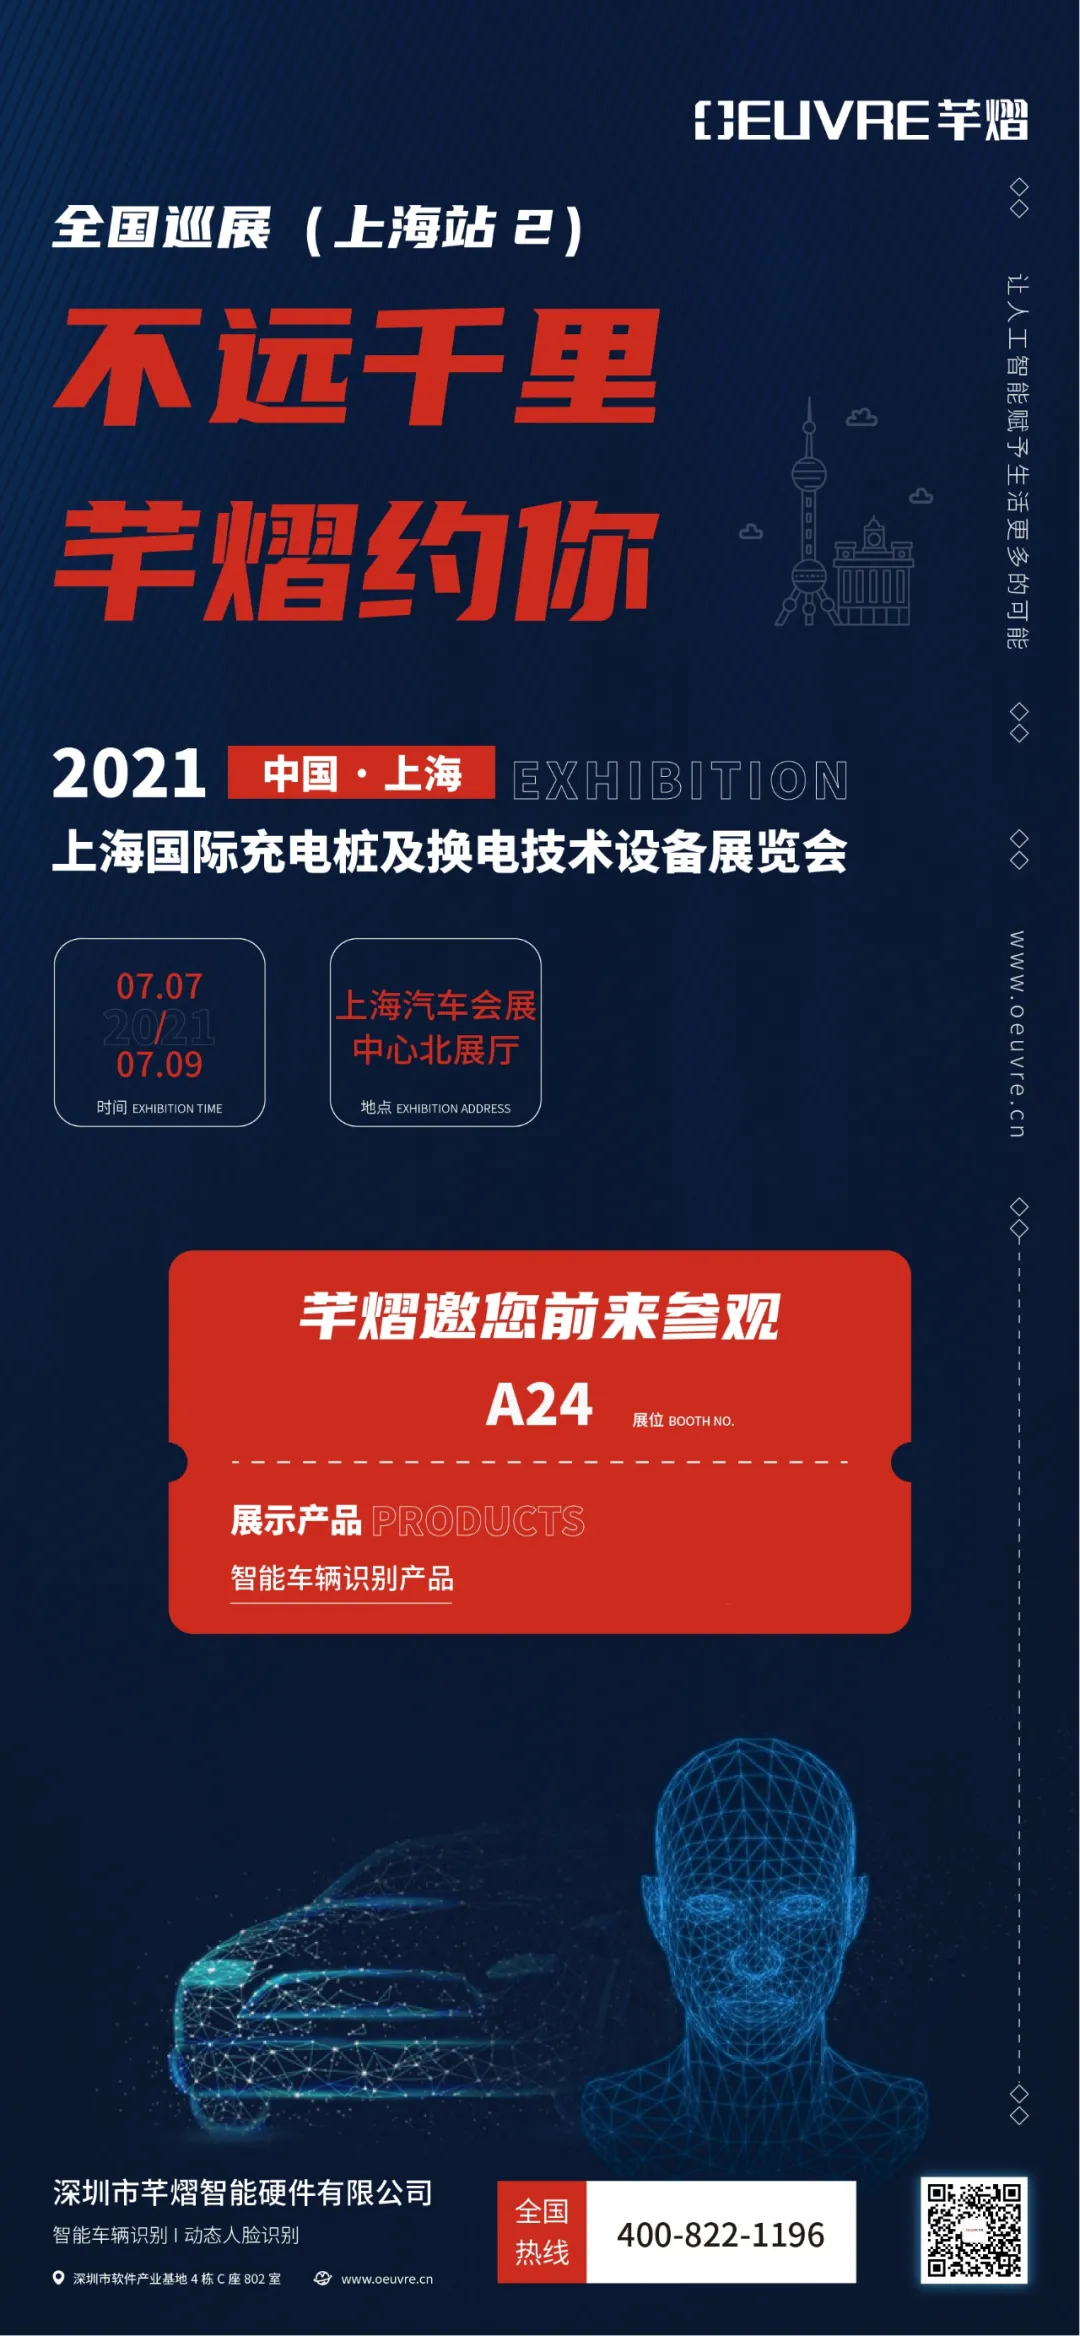 2021上海国际充电桩及换电技术设备展览会